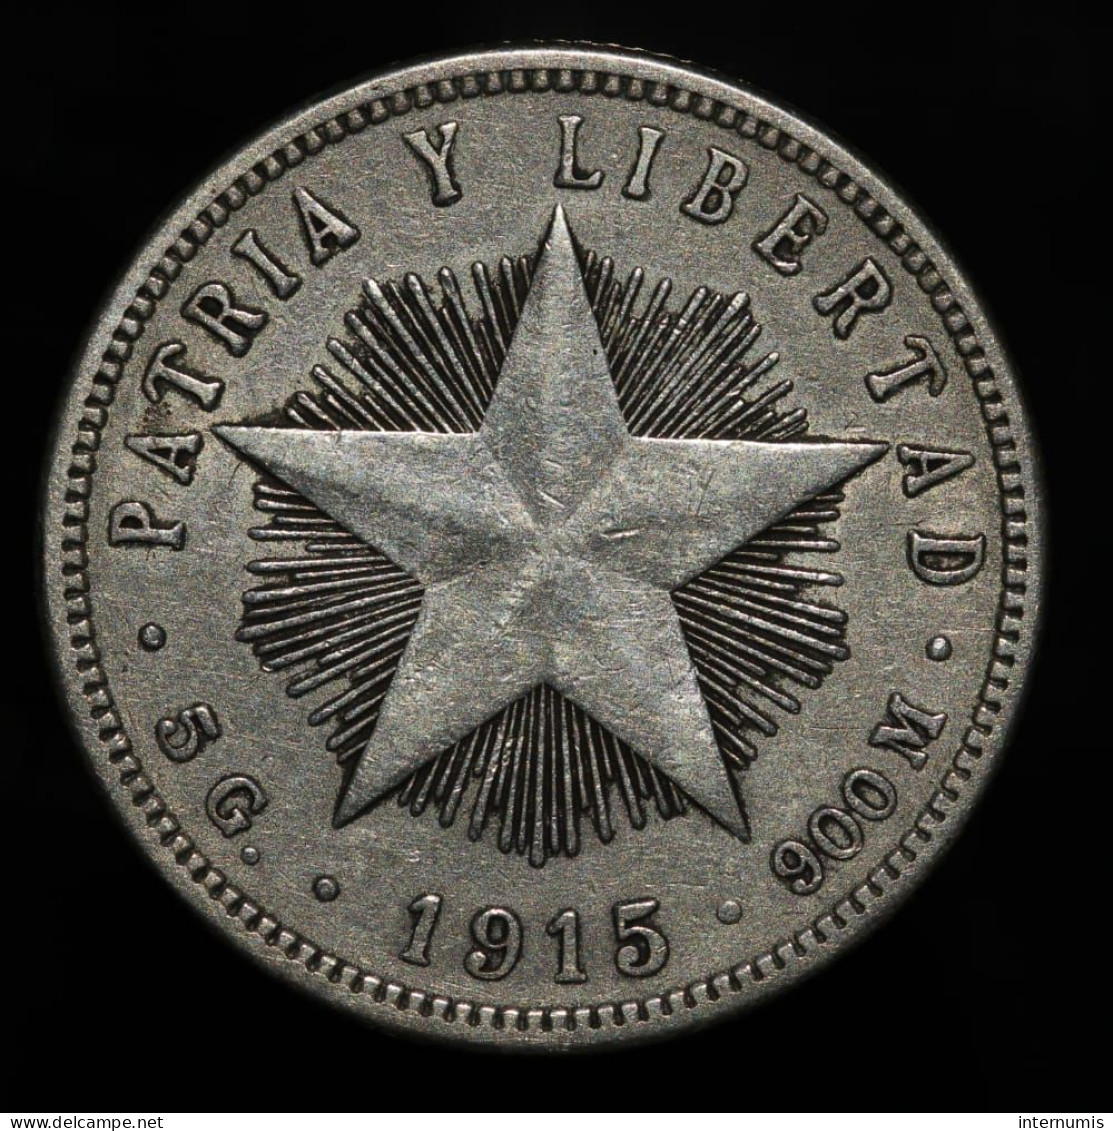 Cuba, 20 Centavos, 1915,  Argent (Silver), TTB+ (EF), KM#13.1 - Cuba